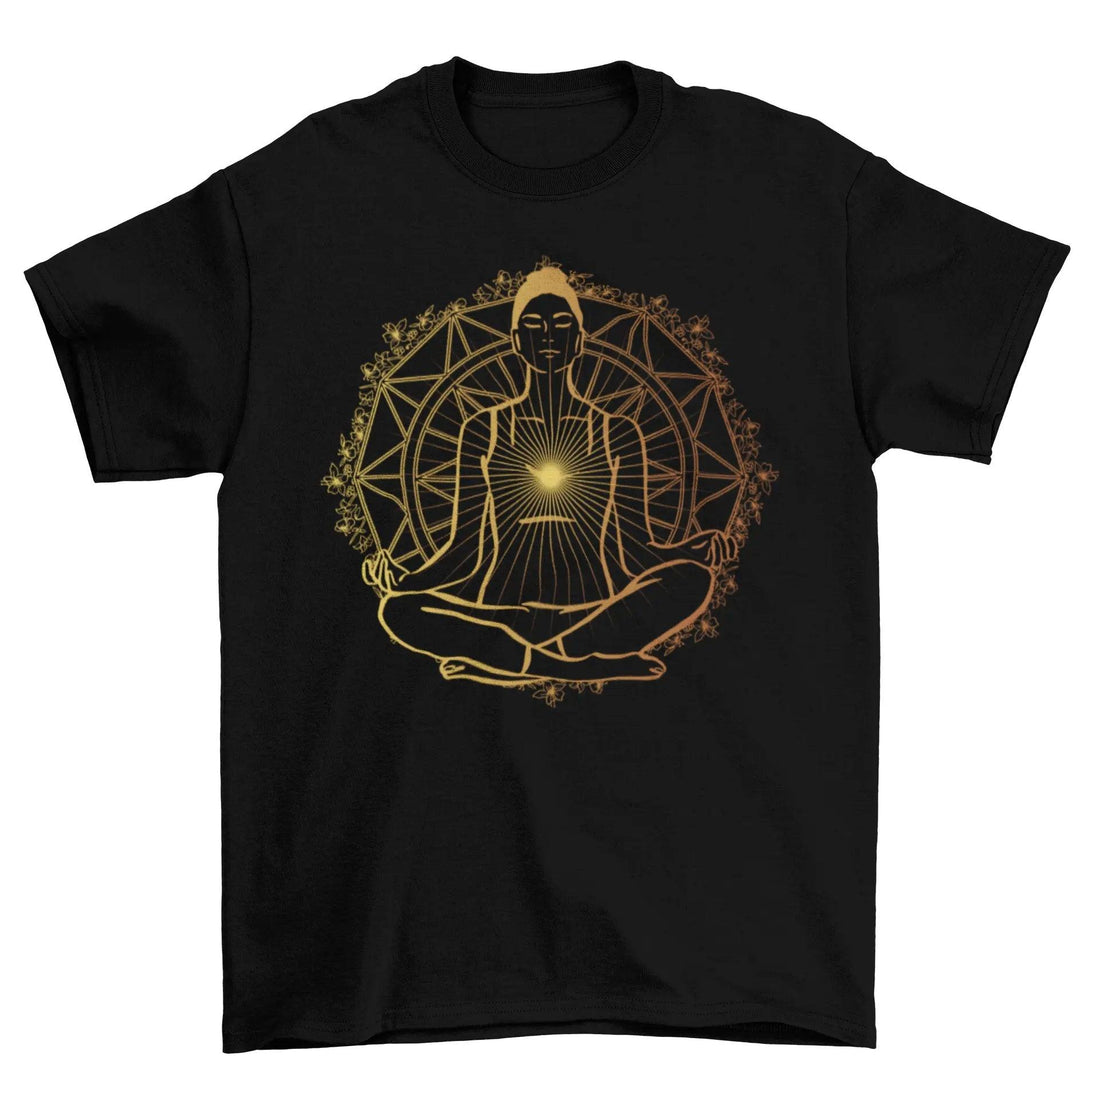 Enlightened spiritual t-shirt - Lacatang Spiritual